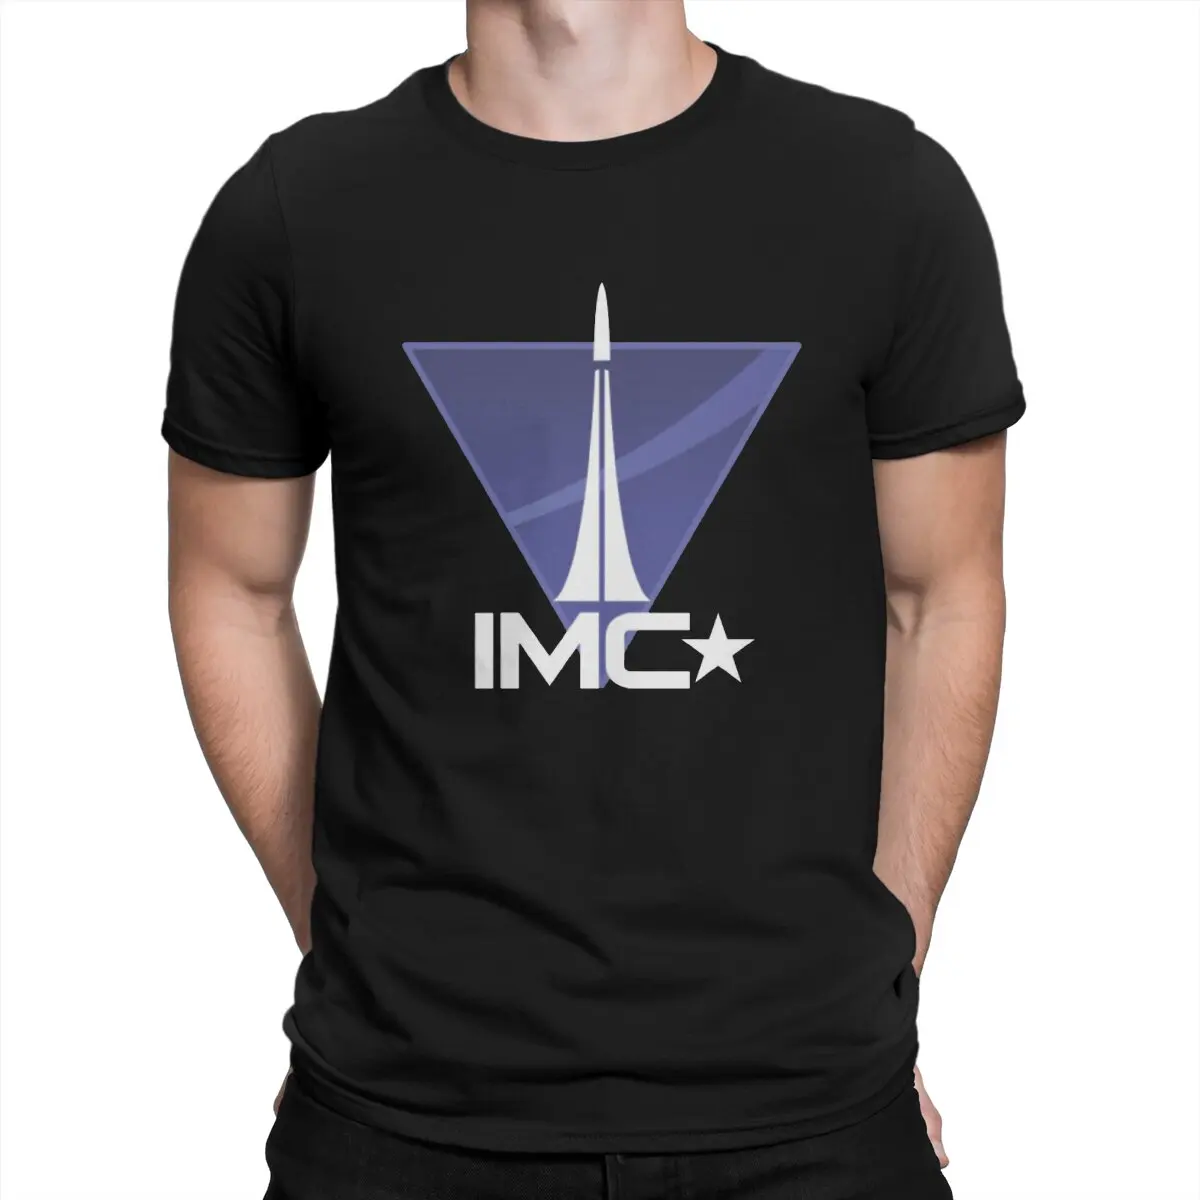 

Футболки Interstellar Manufacturing Corporation IMC для мужчин, модные футболки Titanfall из чистого хлопка, футболки с круглым вырезом и короткими рукавами